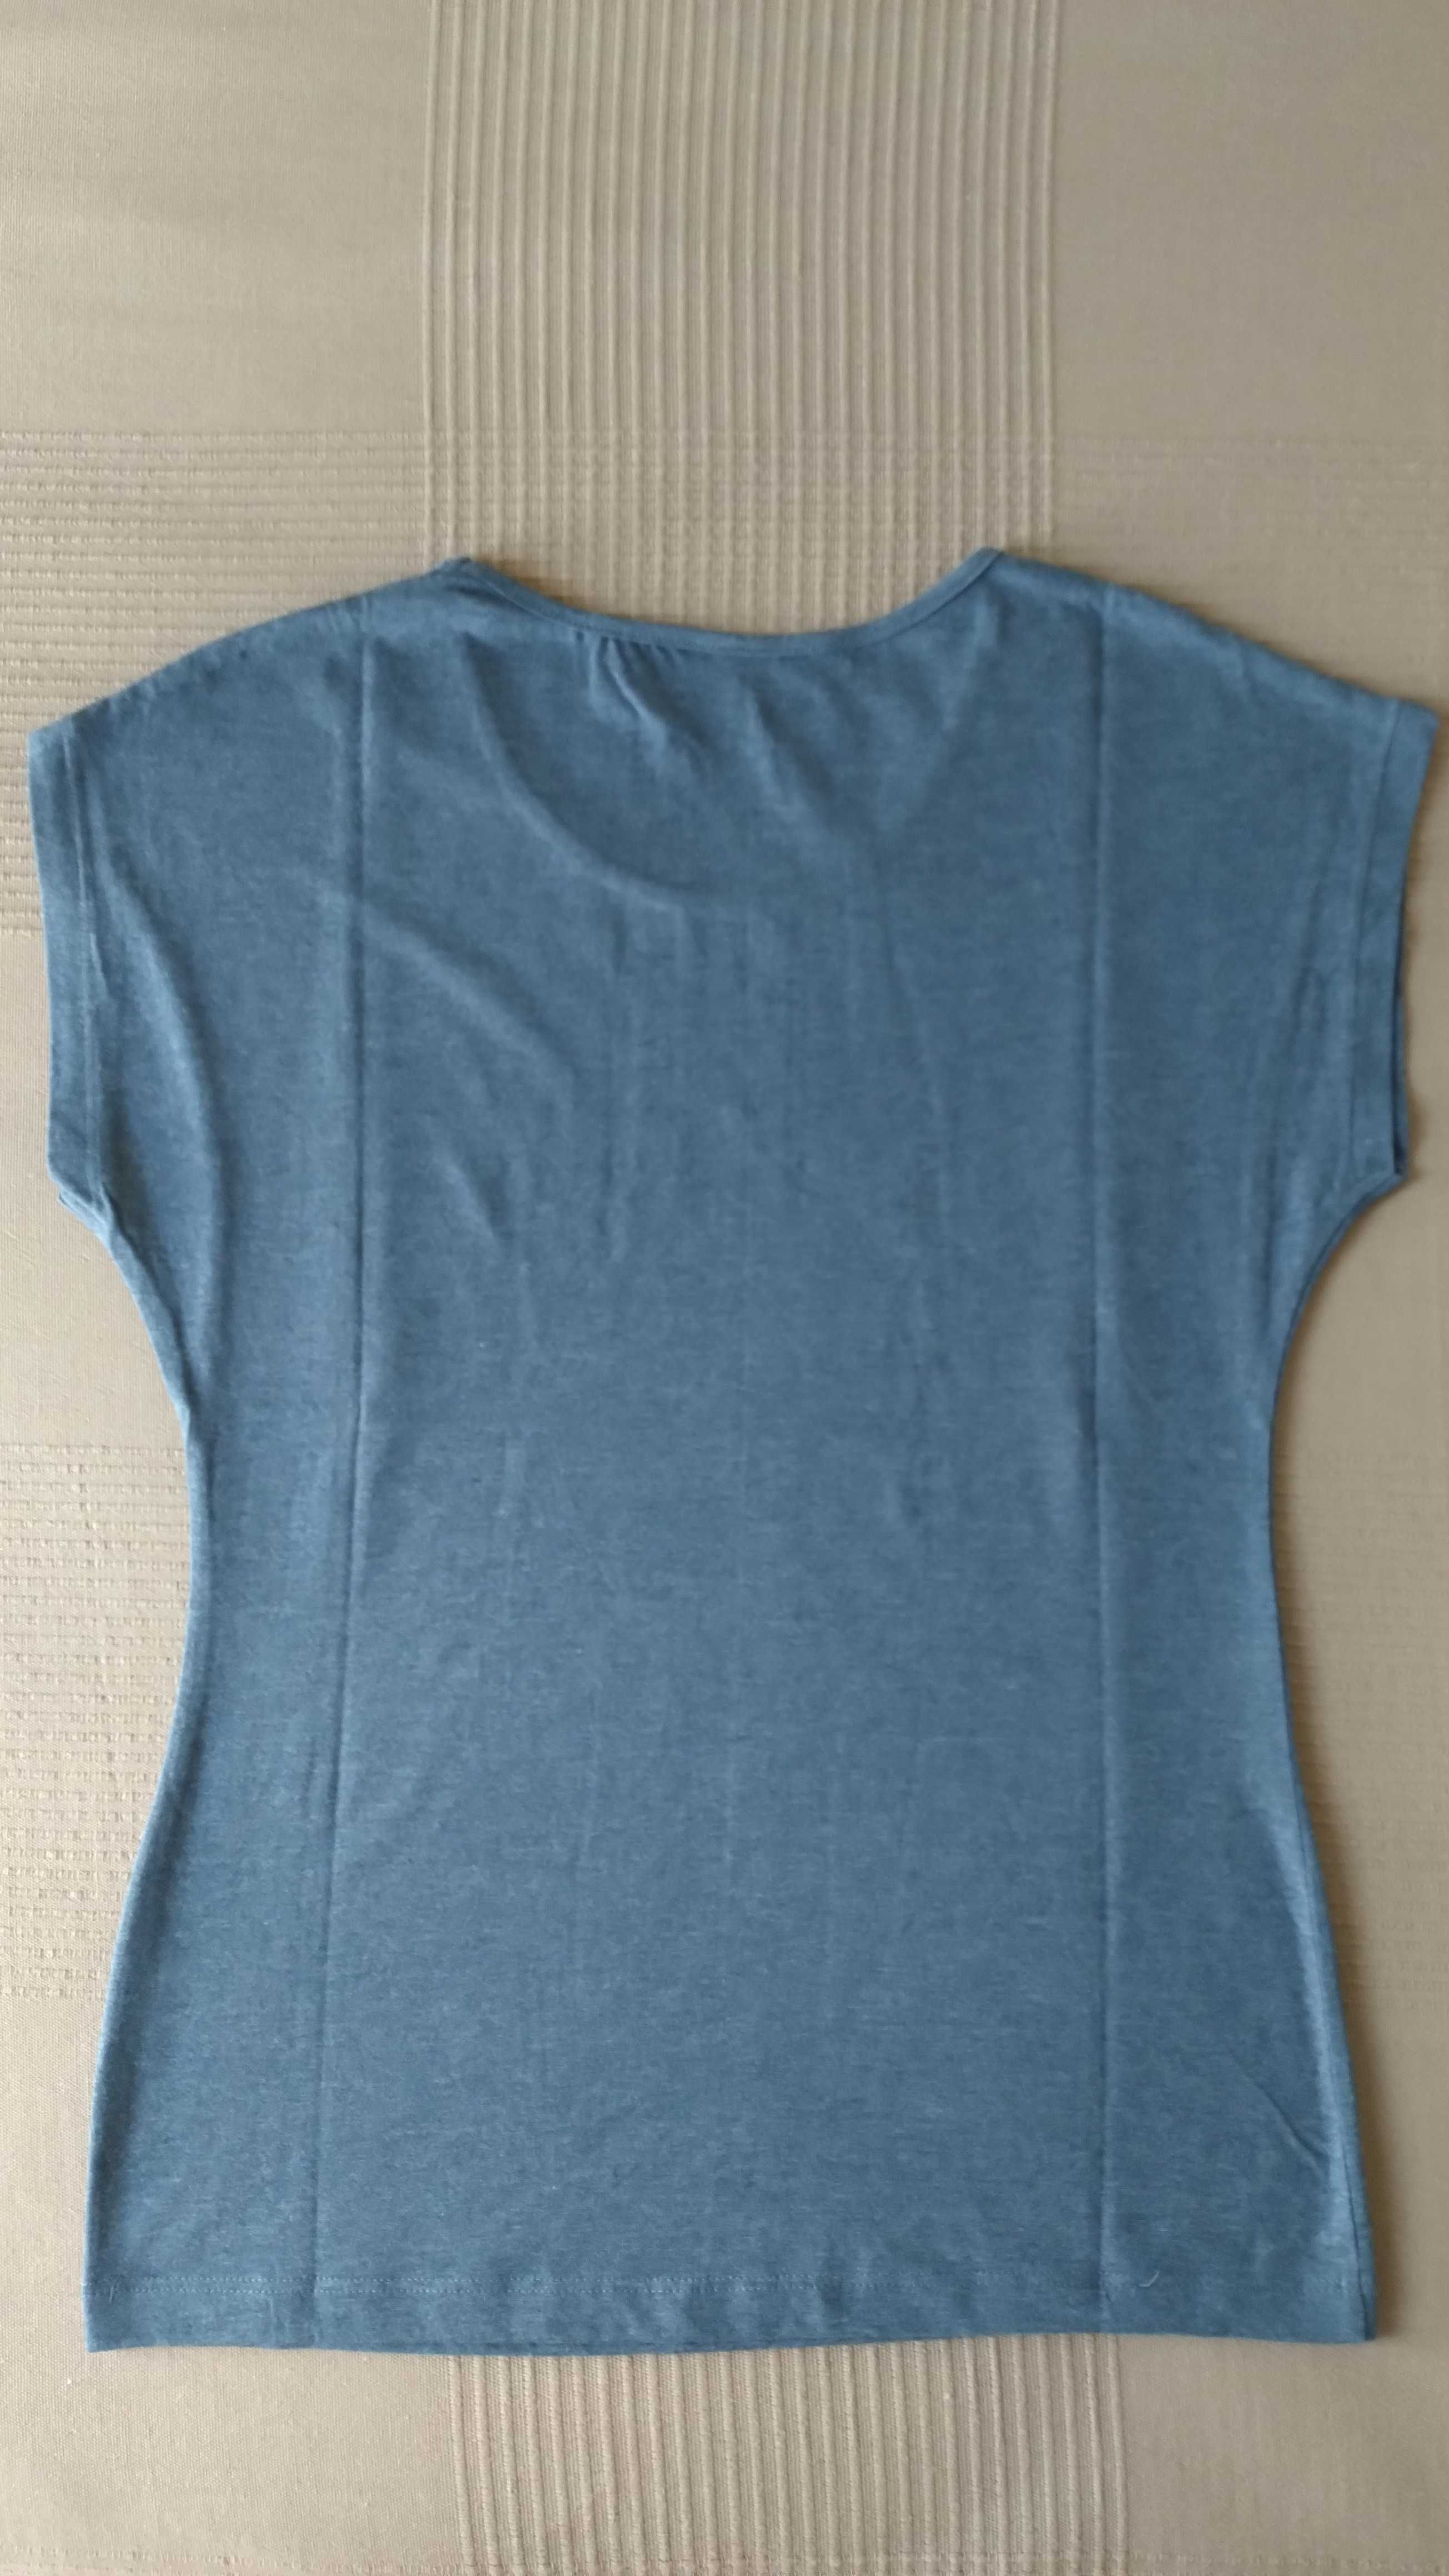 Nowy t-shirt damski Carry - rozmiar S